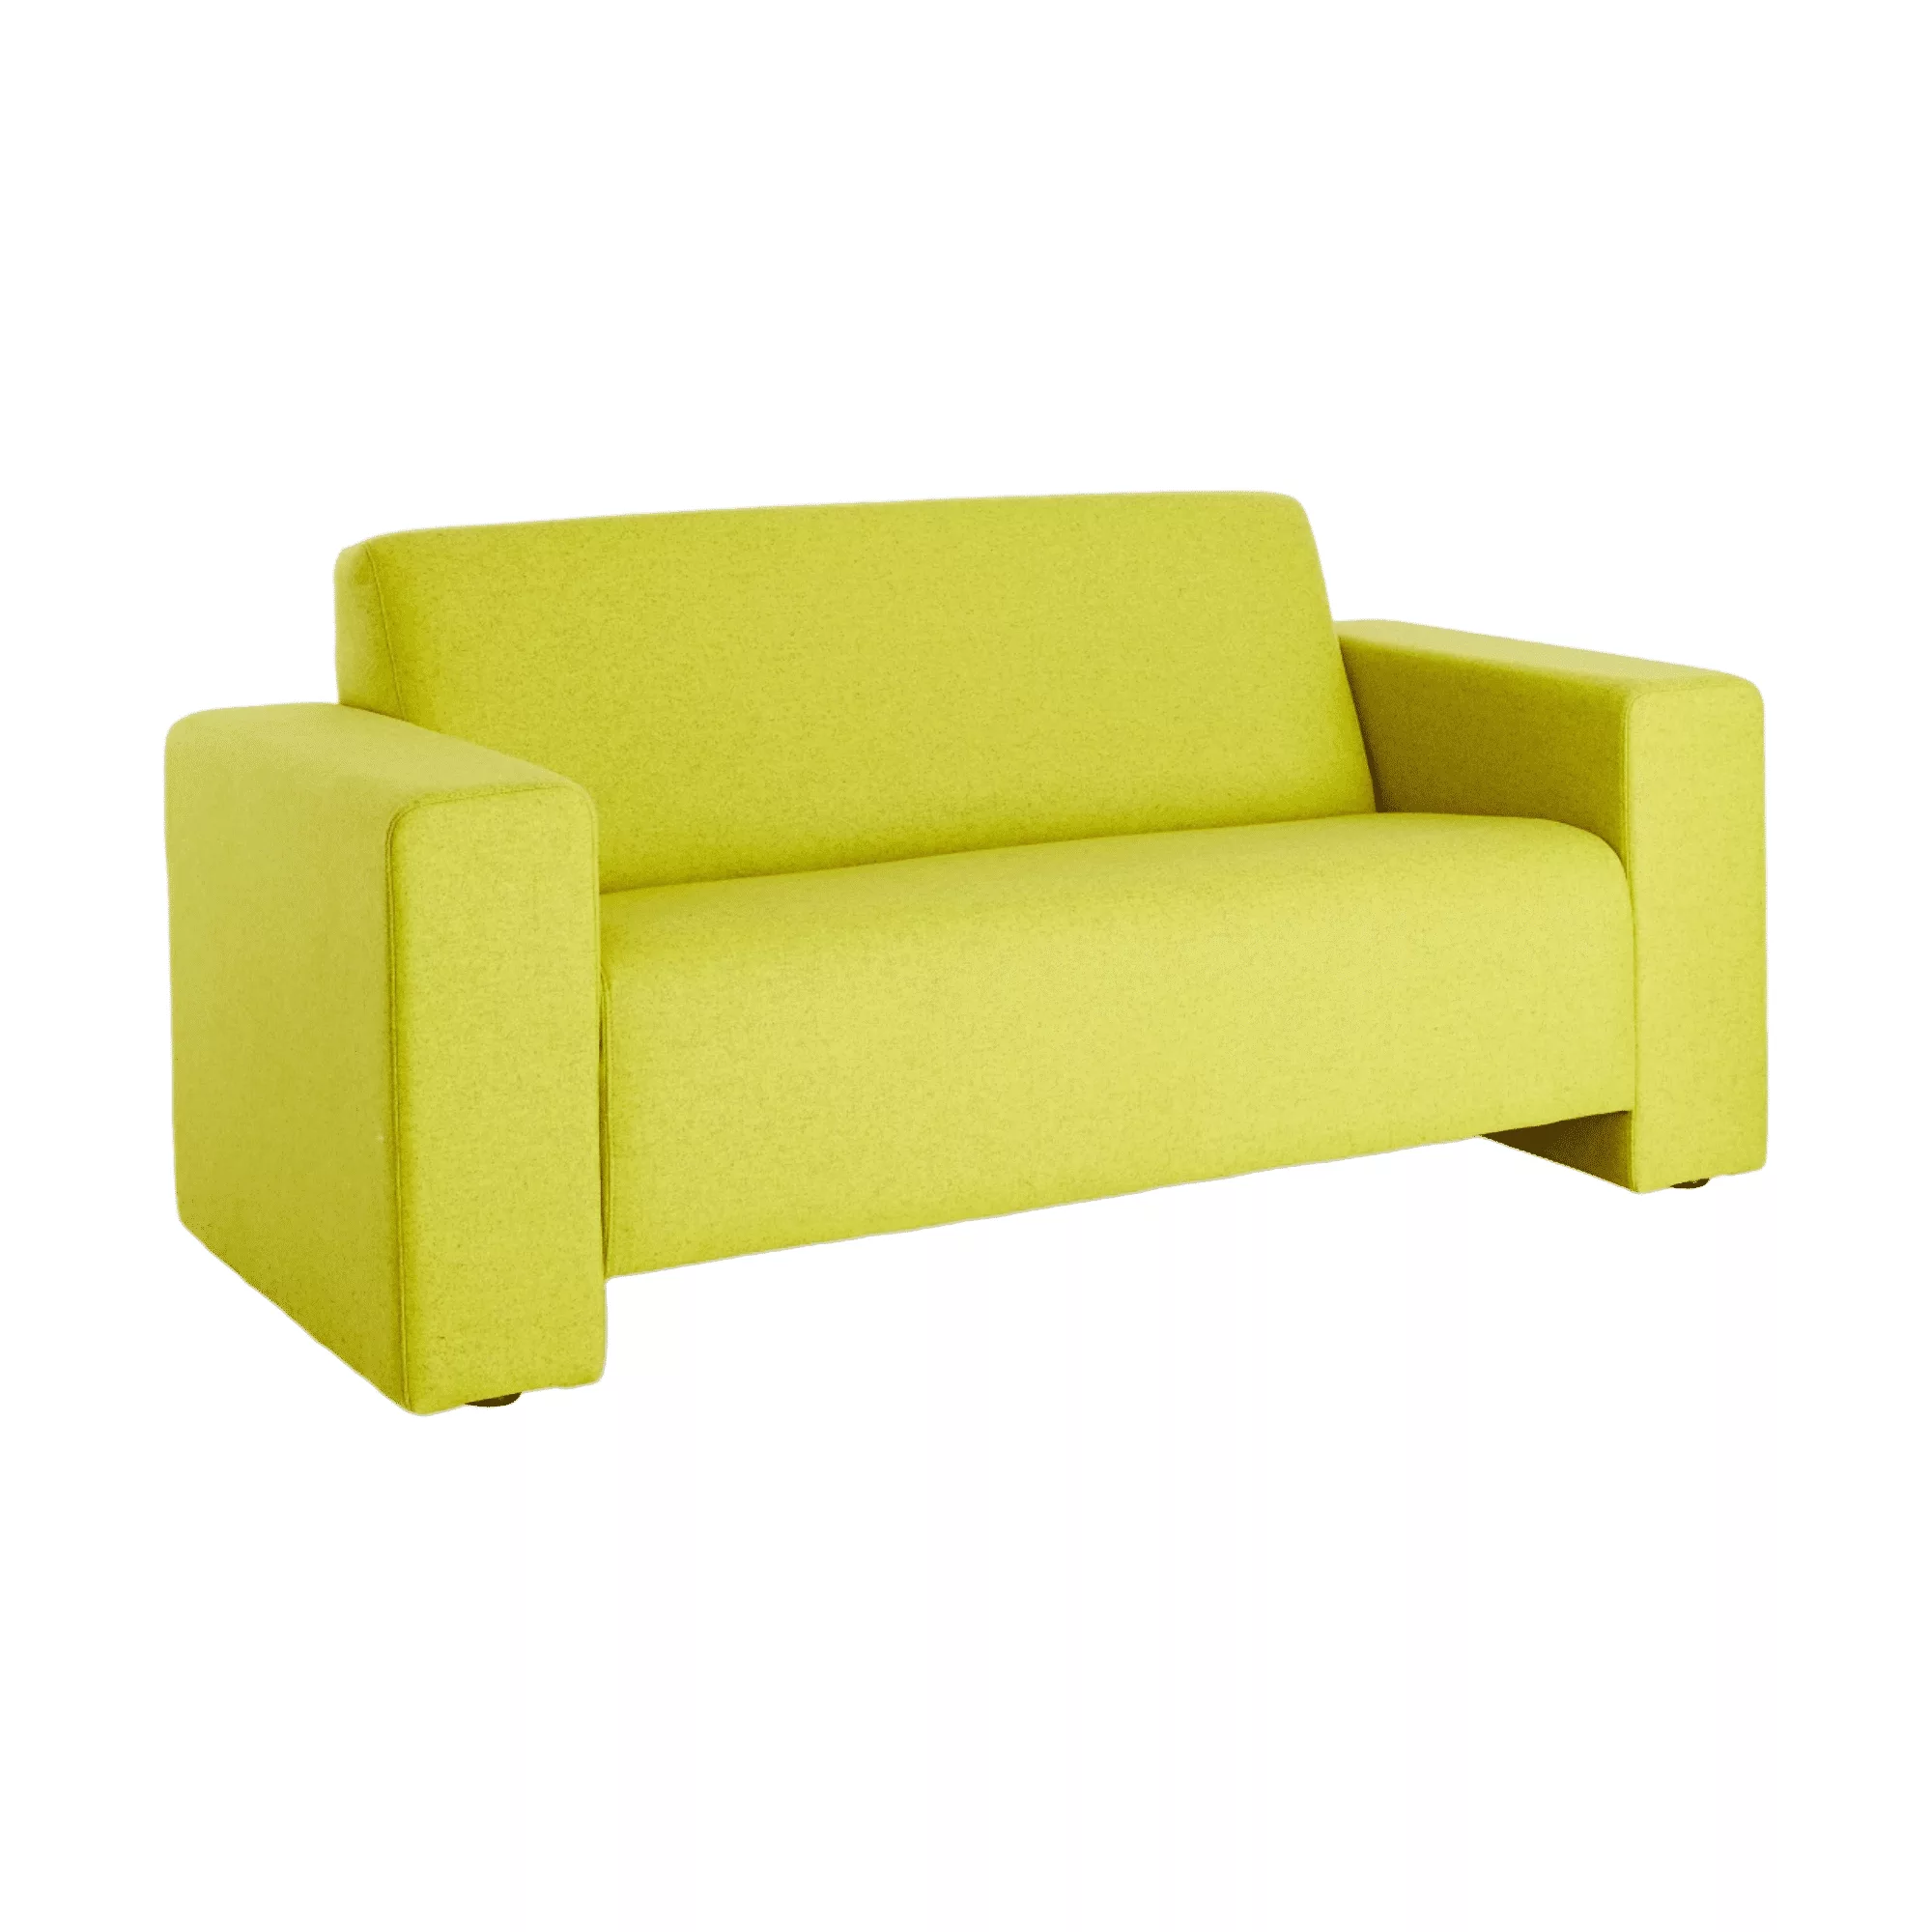 Gele loungebank met brede armleuningen.